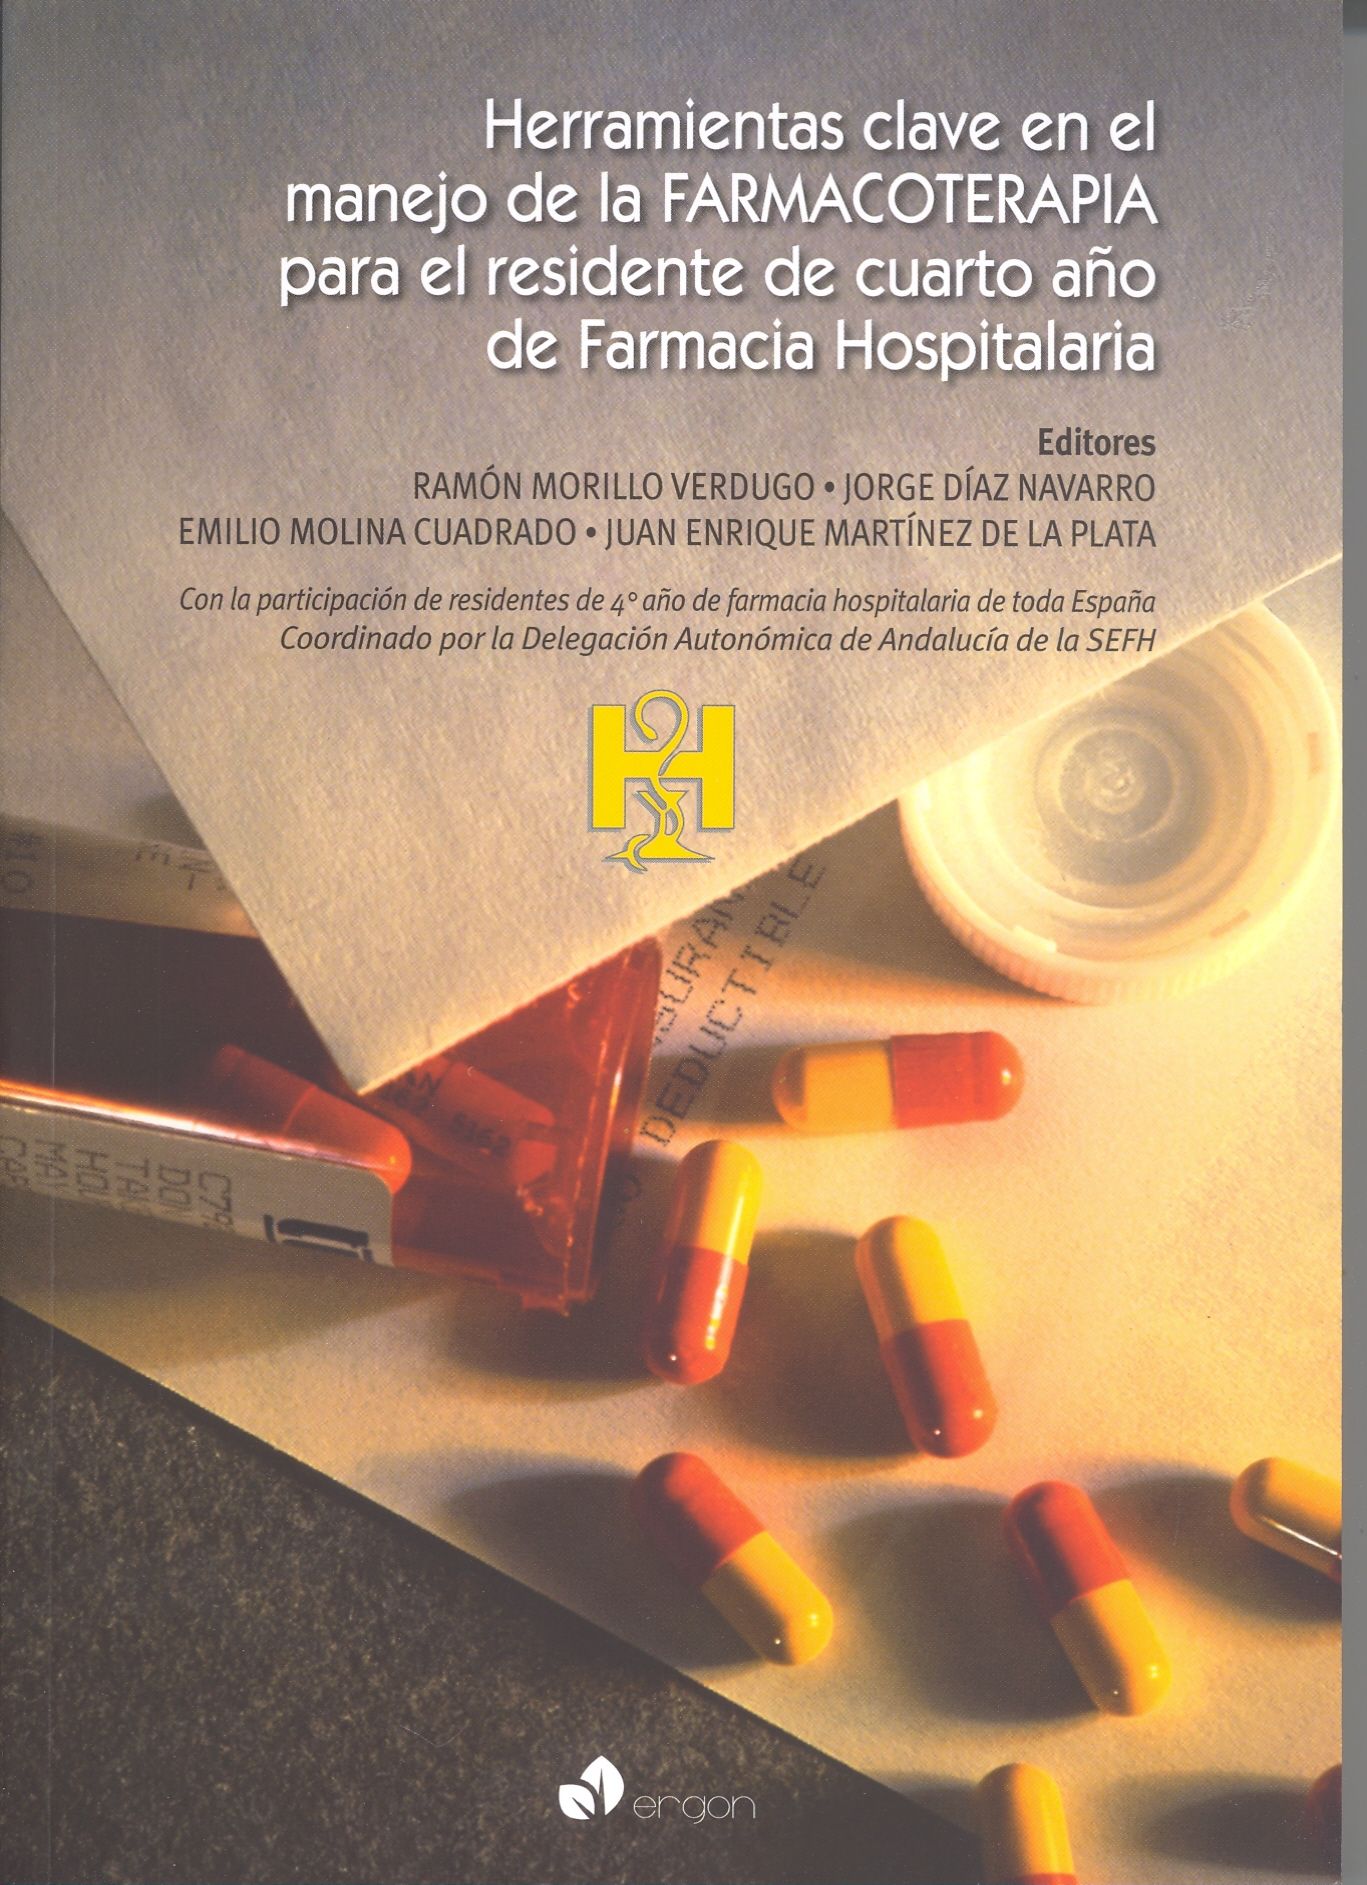 Herramientas Clave en el Manejo de la Farmacoterapia para el Residente de Cuarto Año de Farmacia Hospitalaria